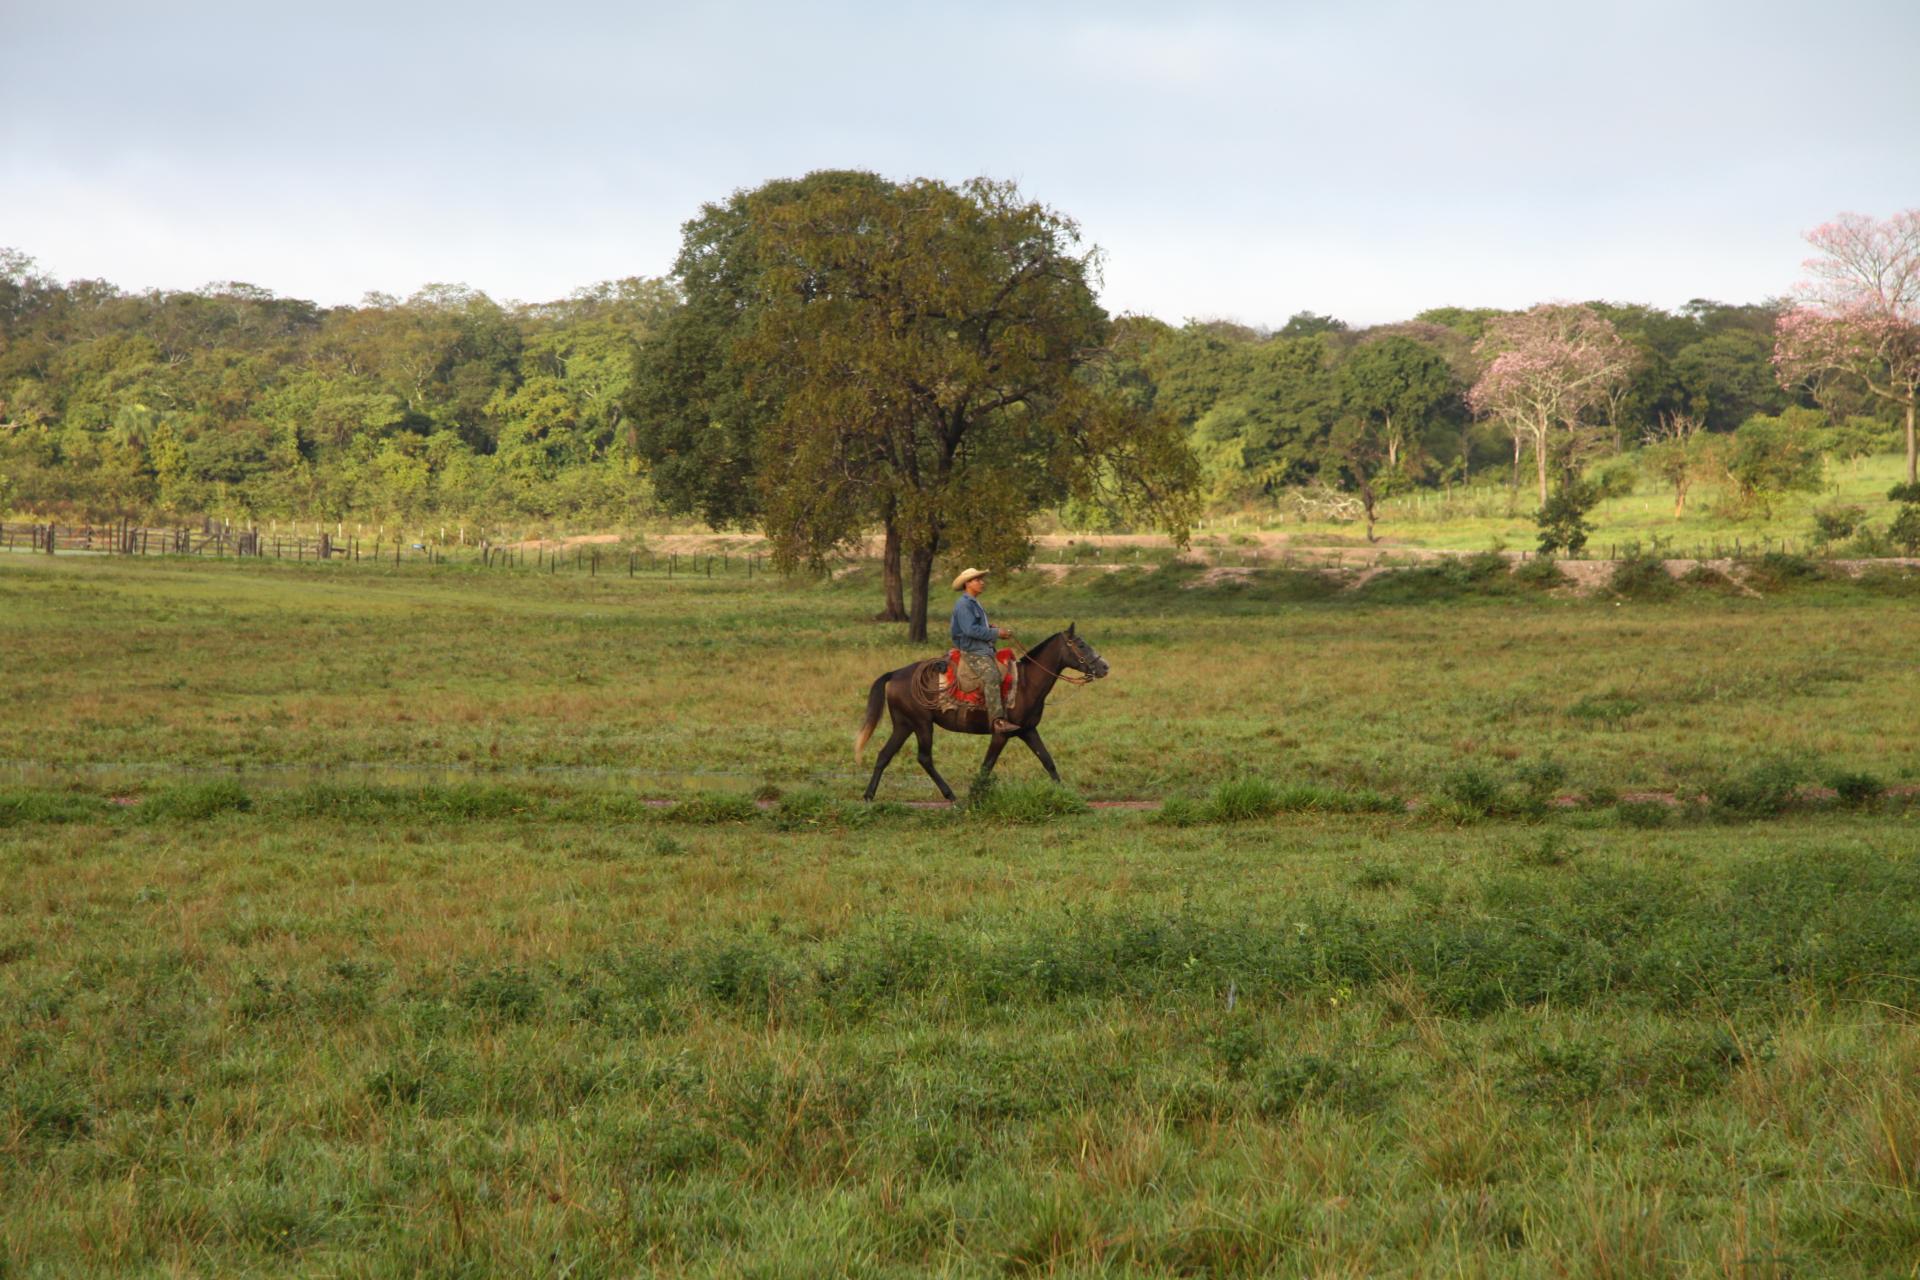 Landscape and riders in Mato Grosso do Sul